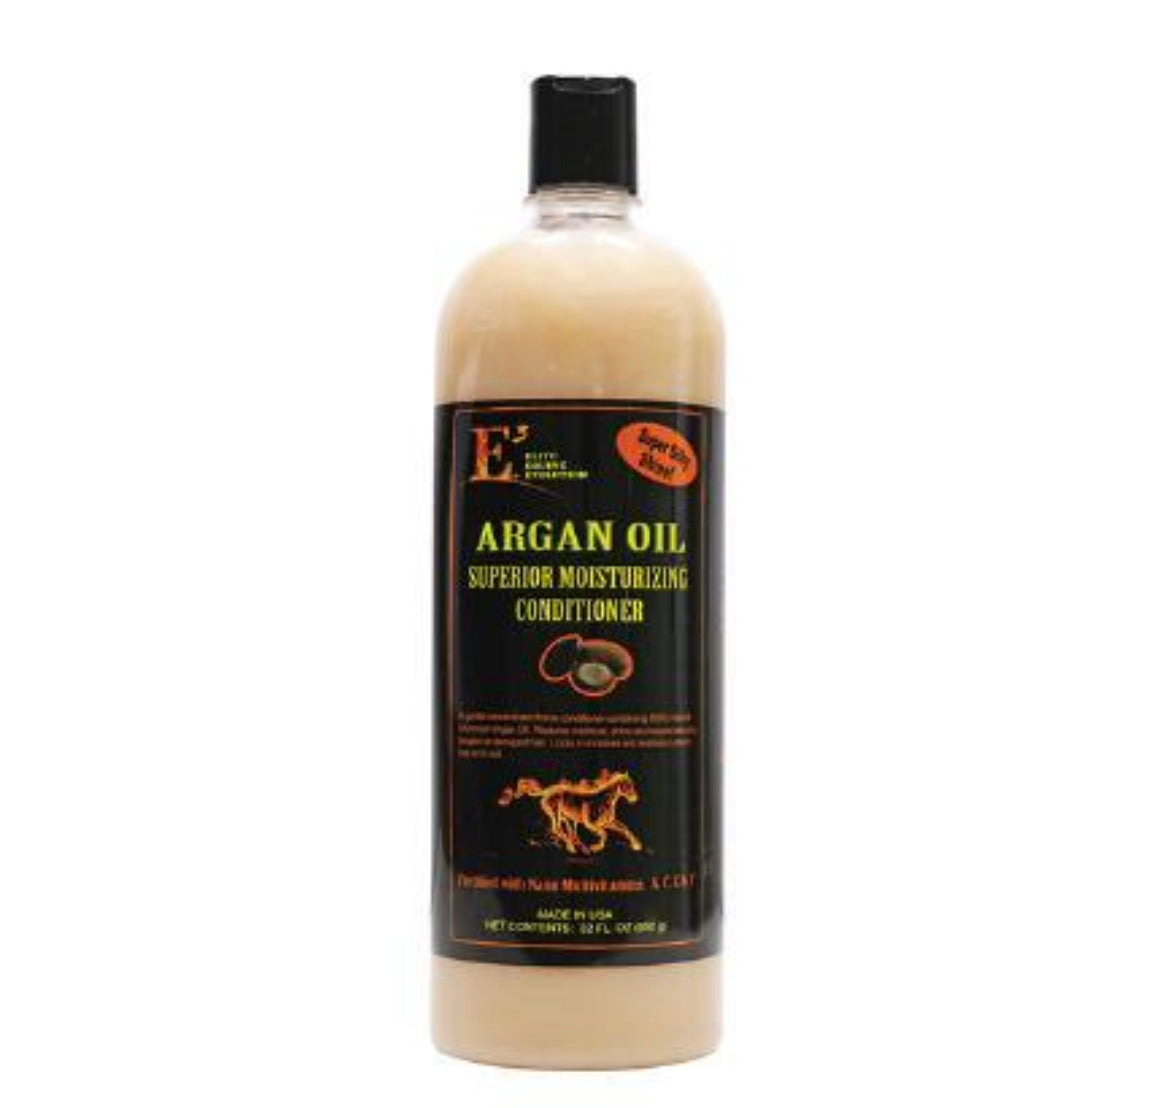 E3 argan oil conditioner